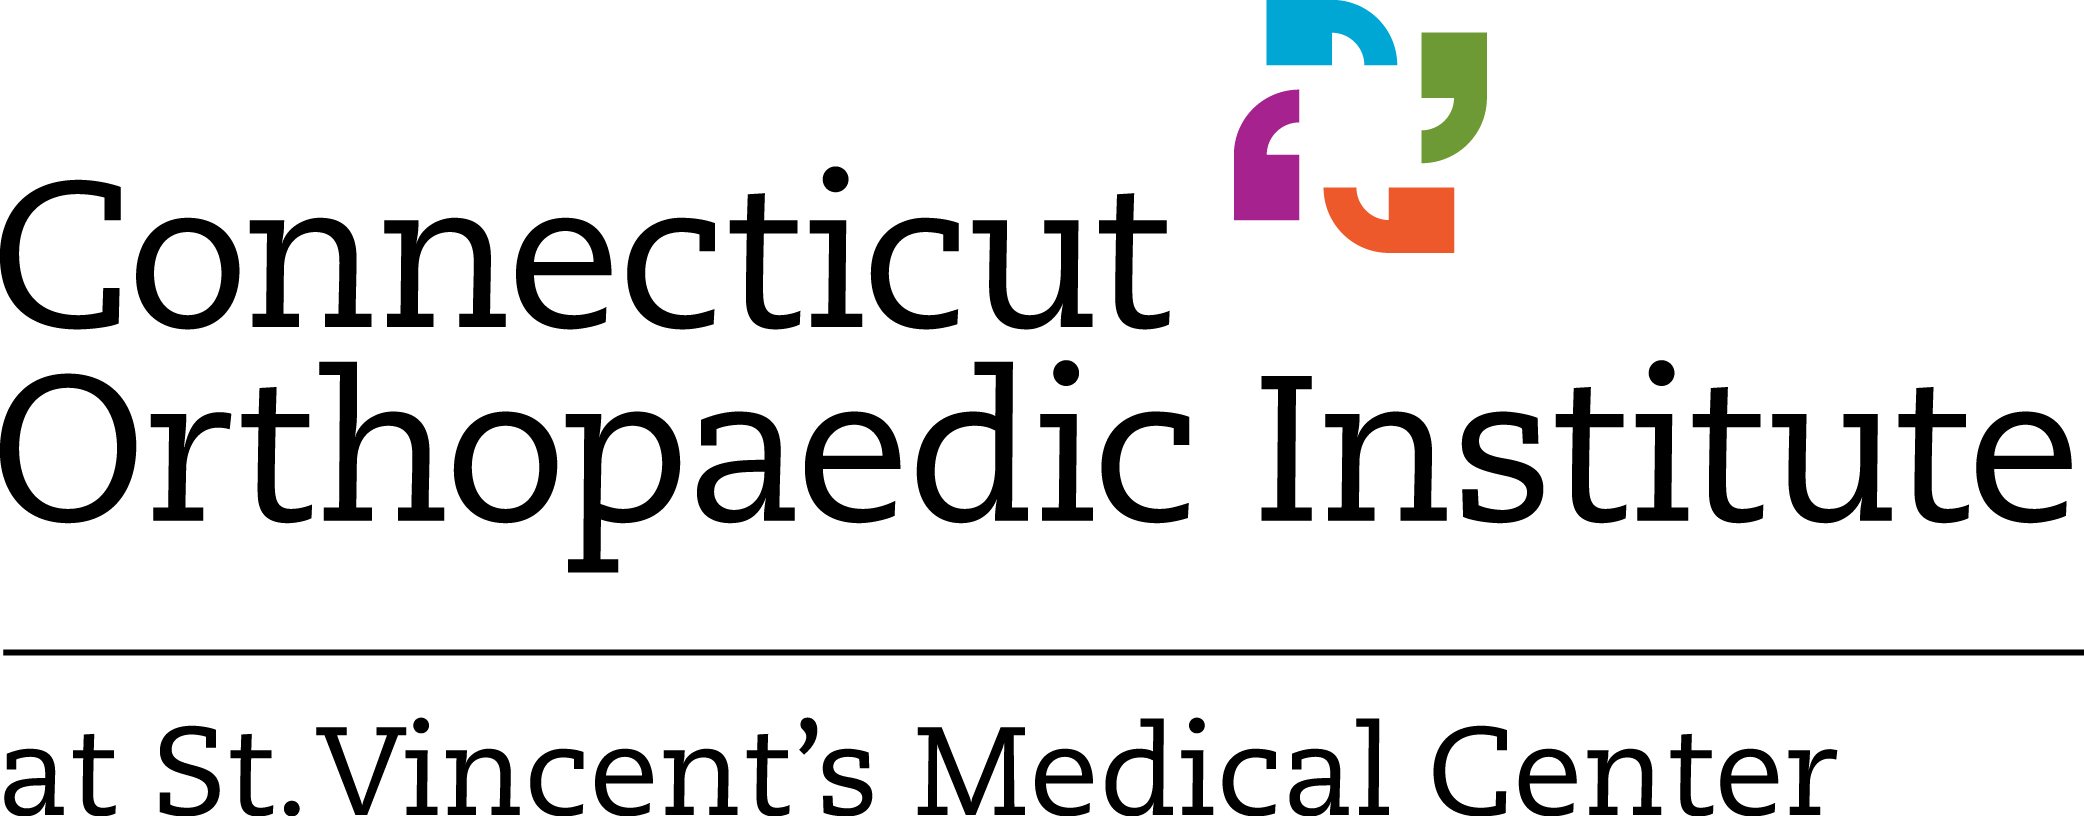 Connecticut Orthopaedic Institute